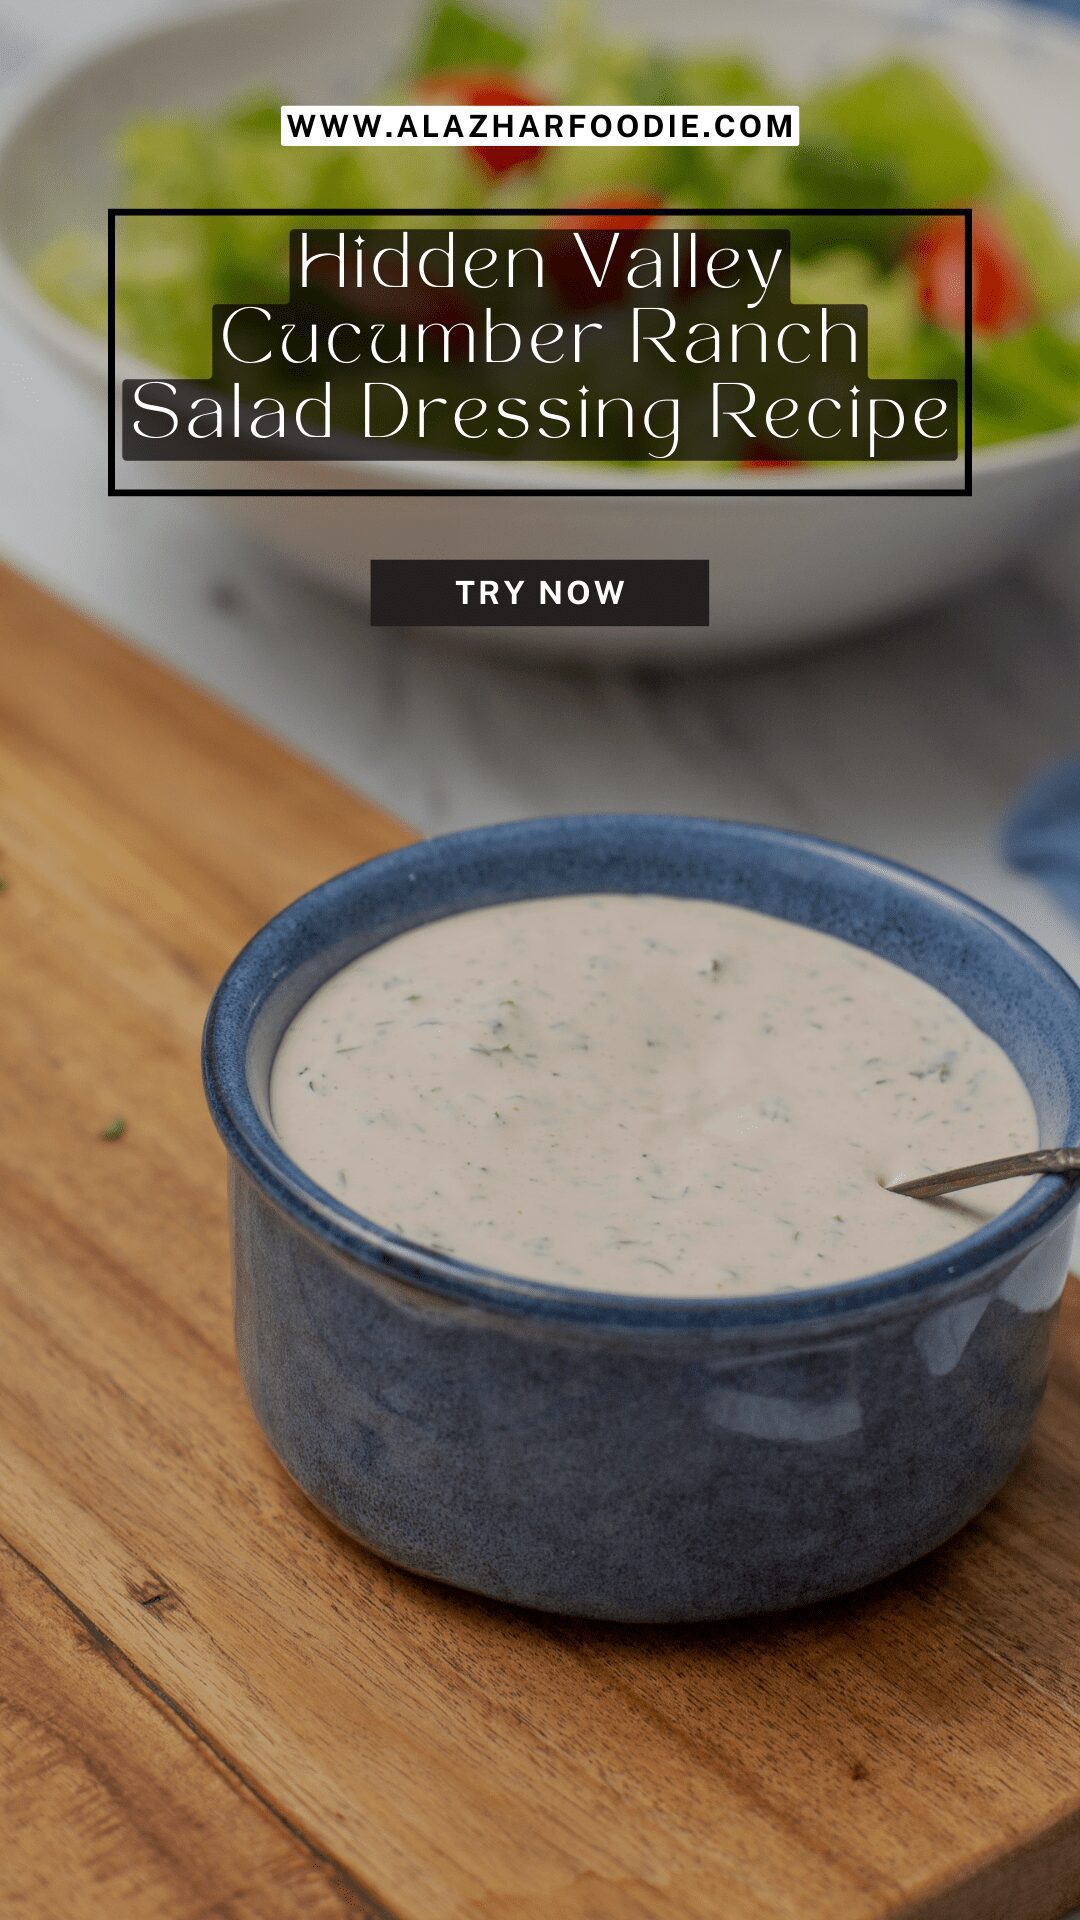 Hidden Valley Cucumber Ranch Salad Dressing Recipe